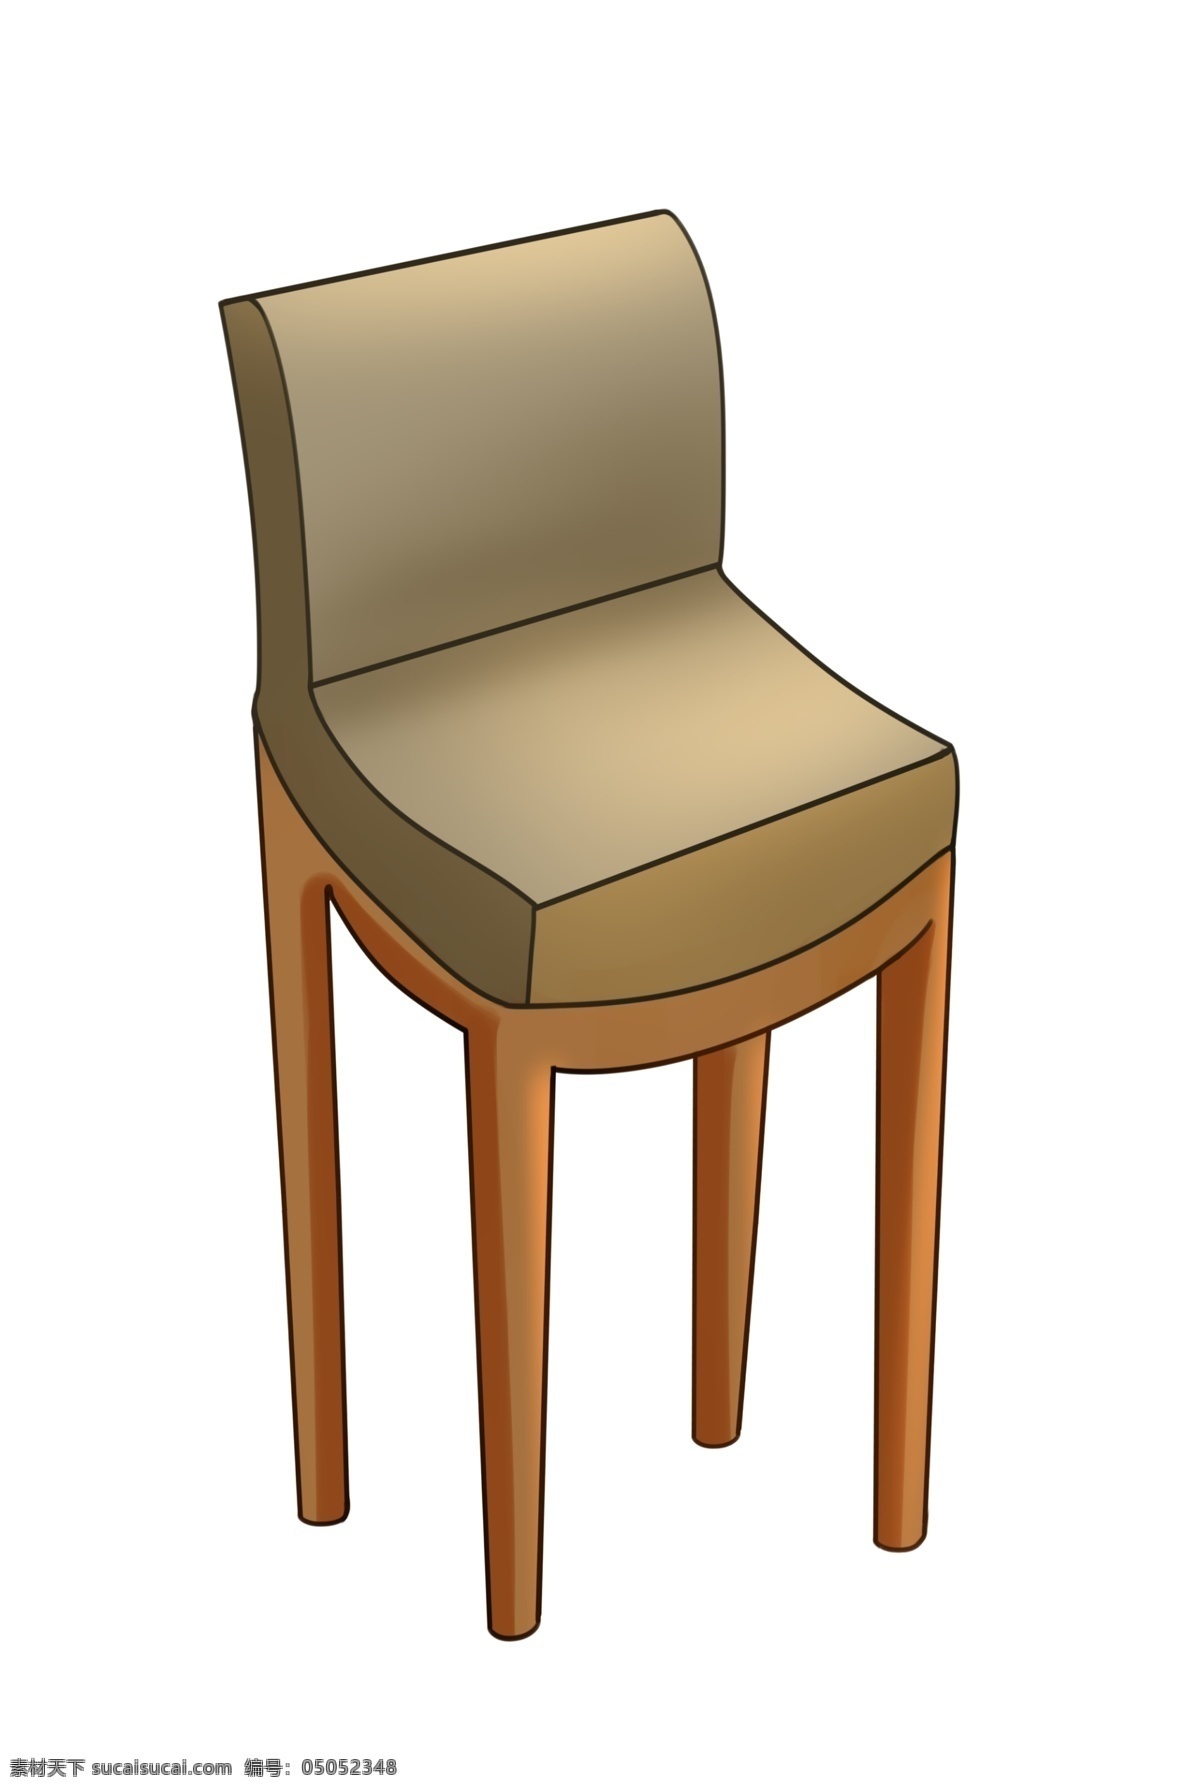 棕色 靠背 椅子 插图 家具 一把椅子 灰色电子 靠背椅子 一把靠背椅子 椅子家具 木质靠背椅子